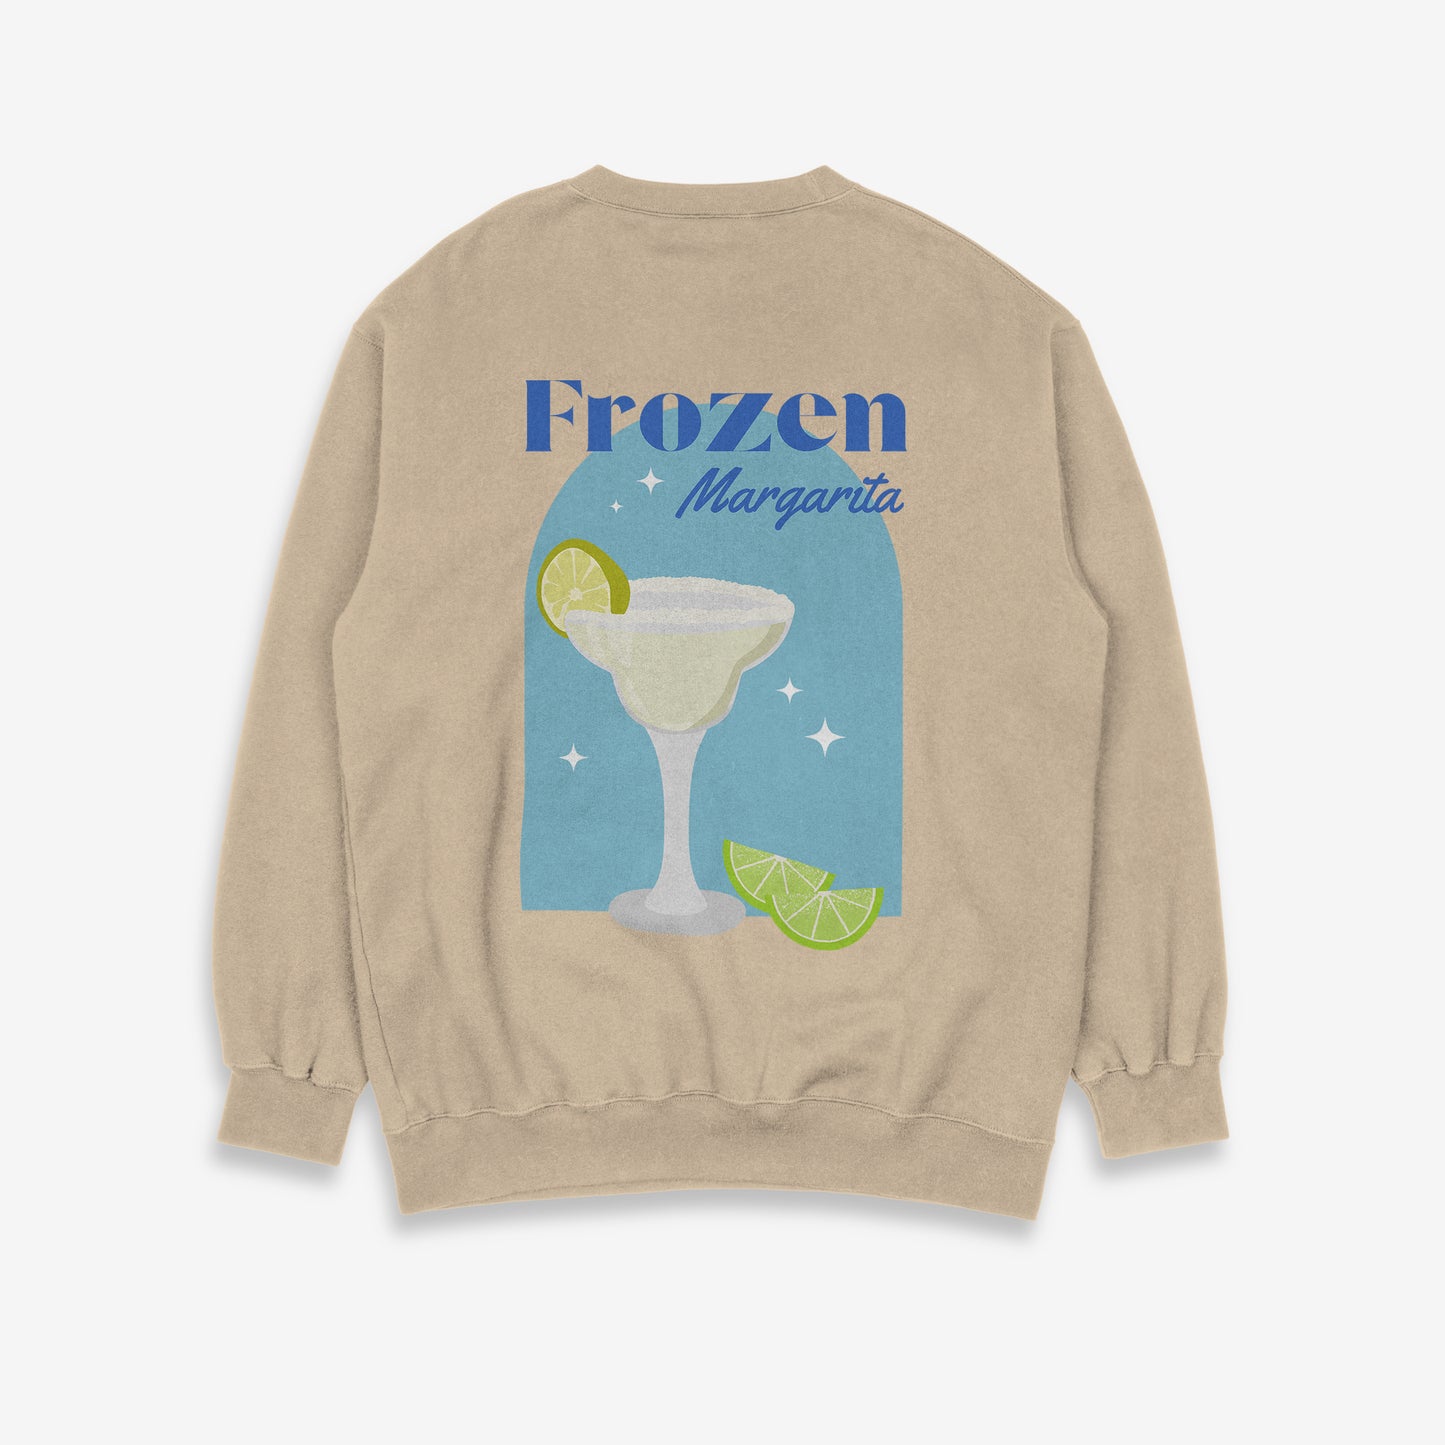 Frozen Margarita Sweatshirt